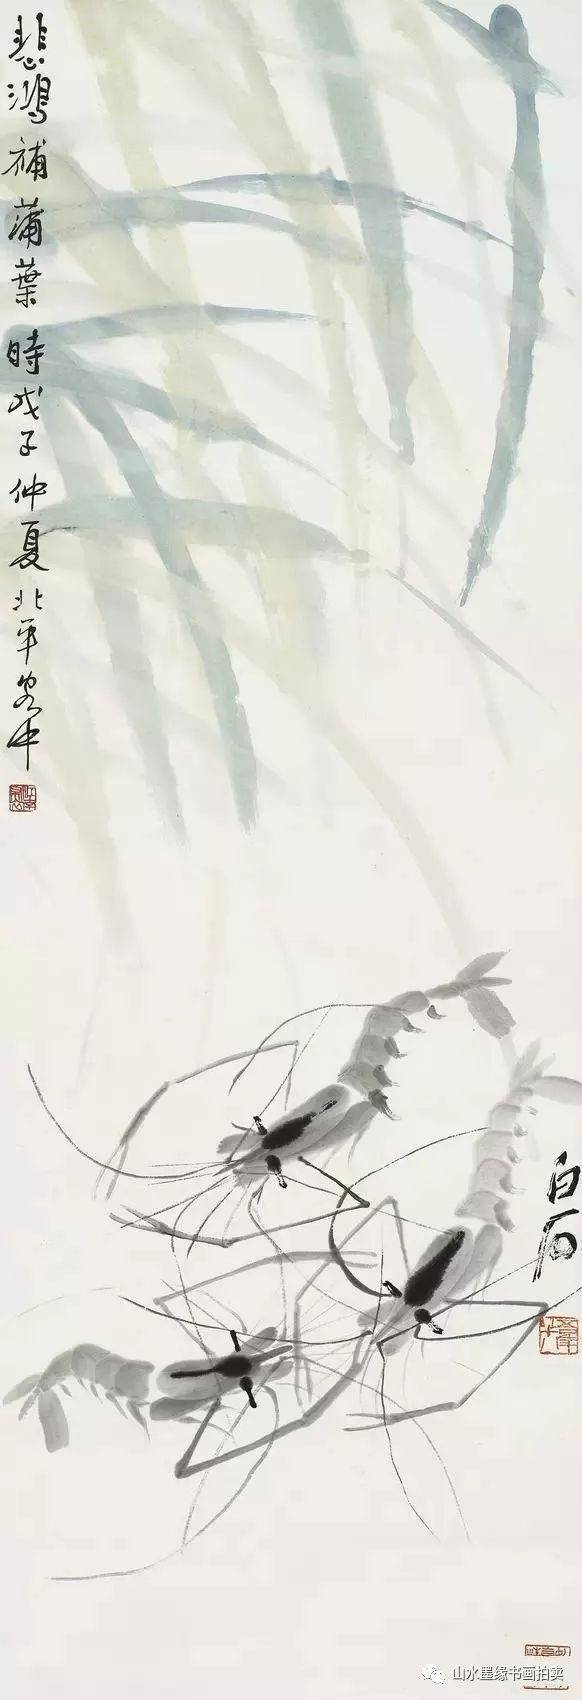 一位致力于改良中国画的中西融合型画家;齐白石,一位从继承传统中创新